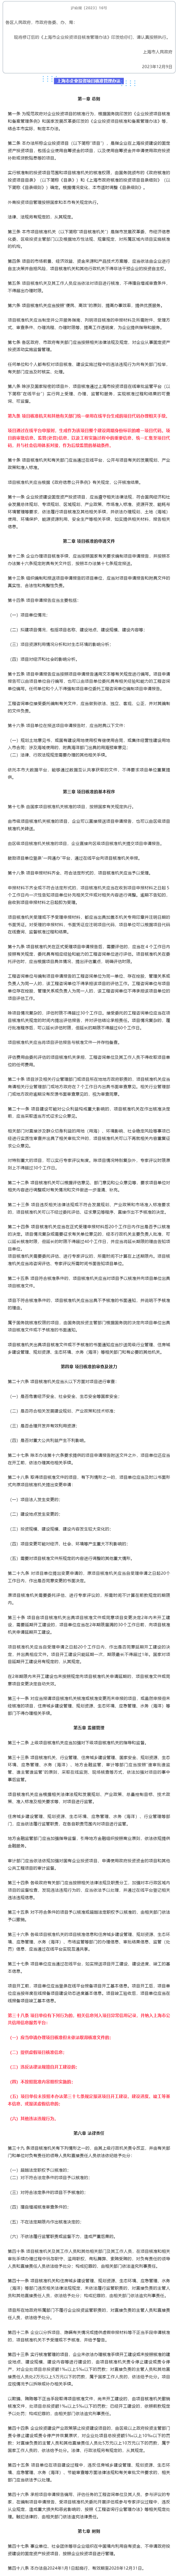 上海市人民政府关于印发修订后的《上海市企业投资项目核准管理办法》的通知.png